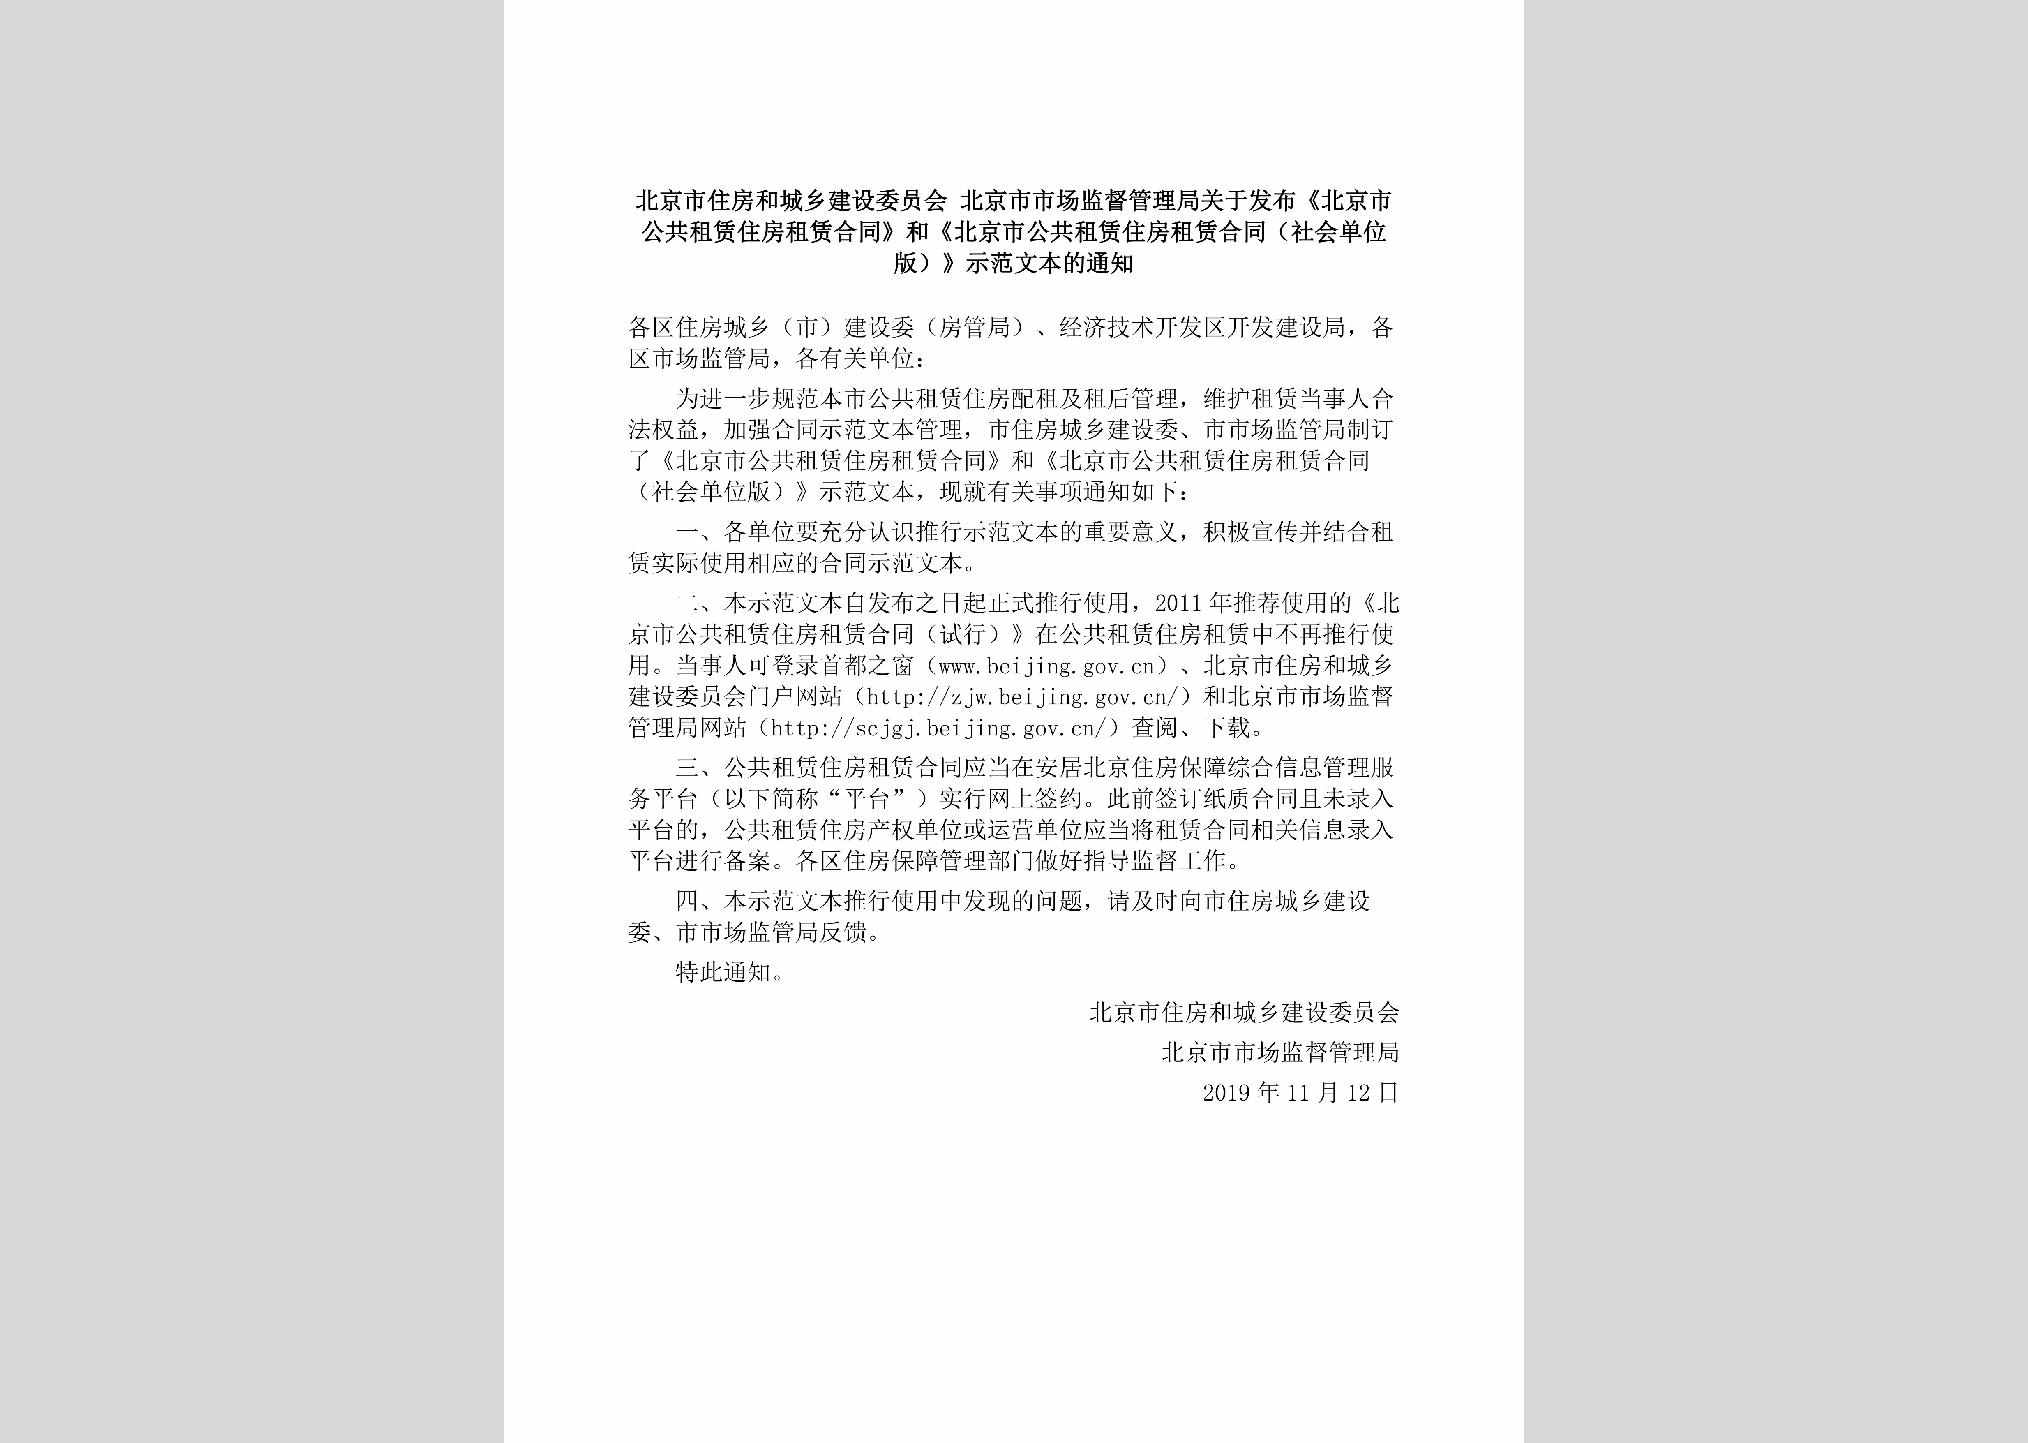 BJ-GGZLZFZL-2019：北京市住房和城乡建设委员会北京市市场监督管理局关于发布《北京市公共租赁住房租赁合同》和《北京市公共租赁住房租赁合同（社会单位版）》示范文本的通知